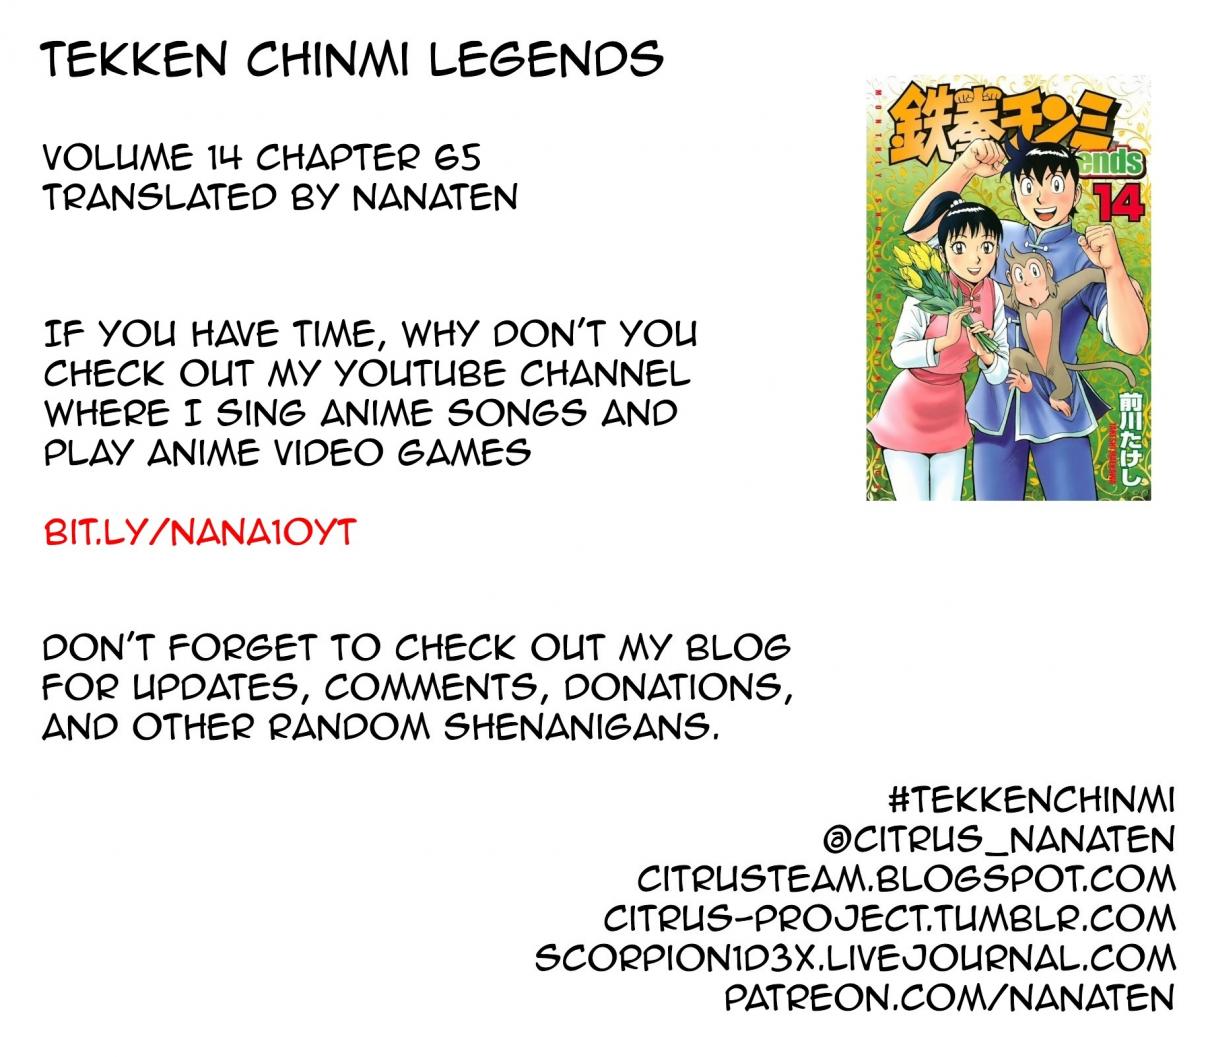 Tekken Chinmi Legends Vol. 14 Ch. 65 Information Exchange